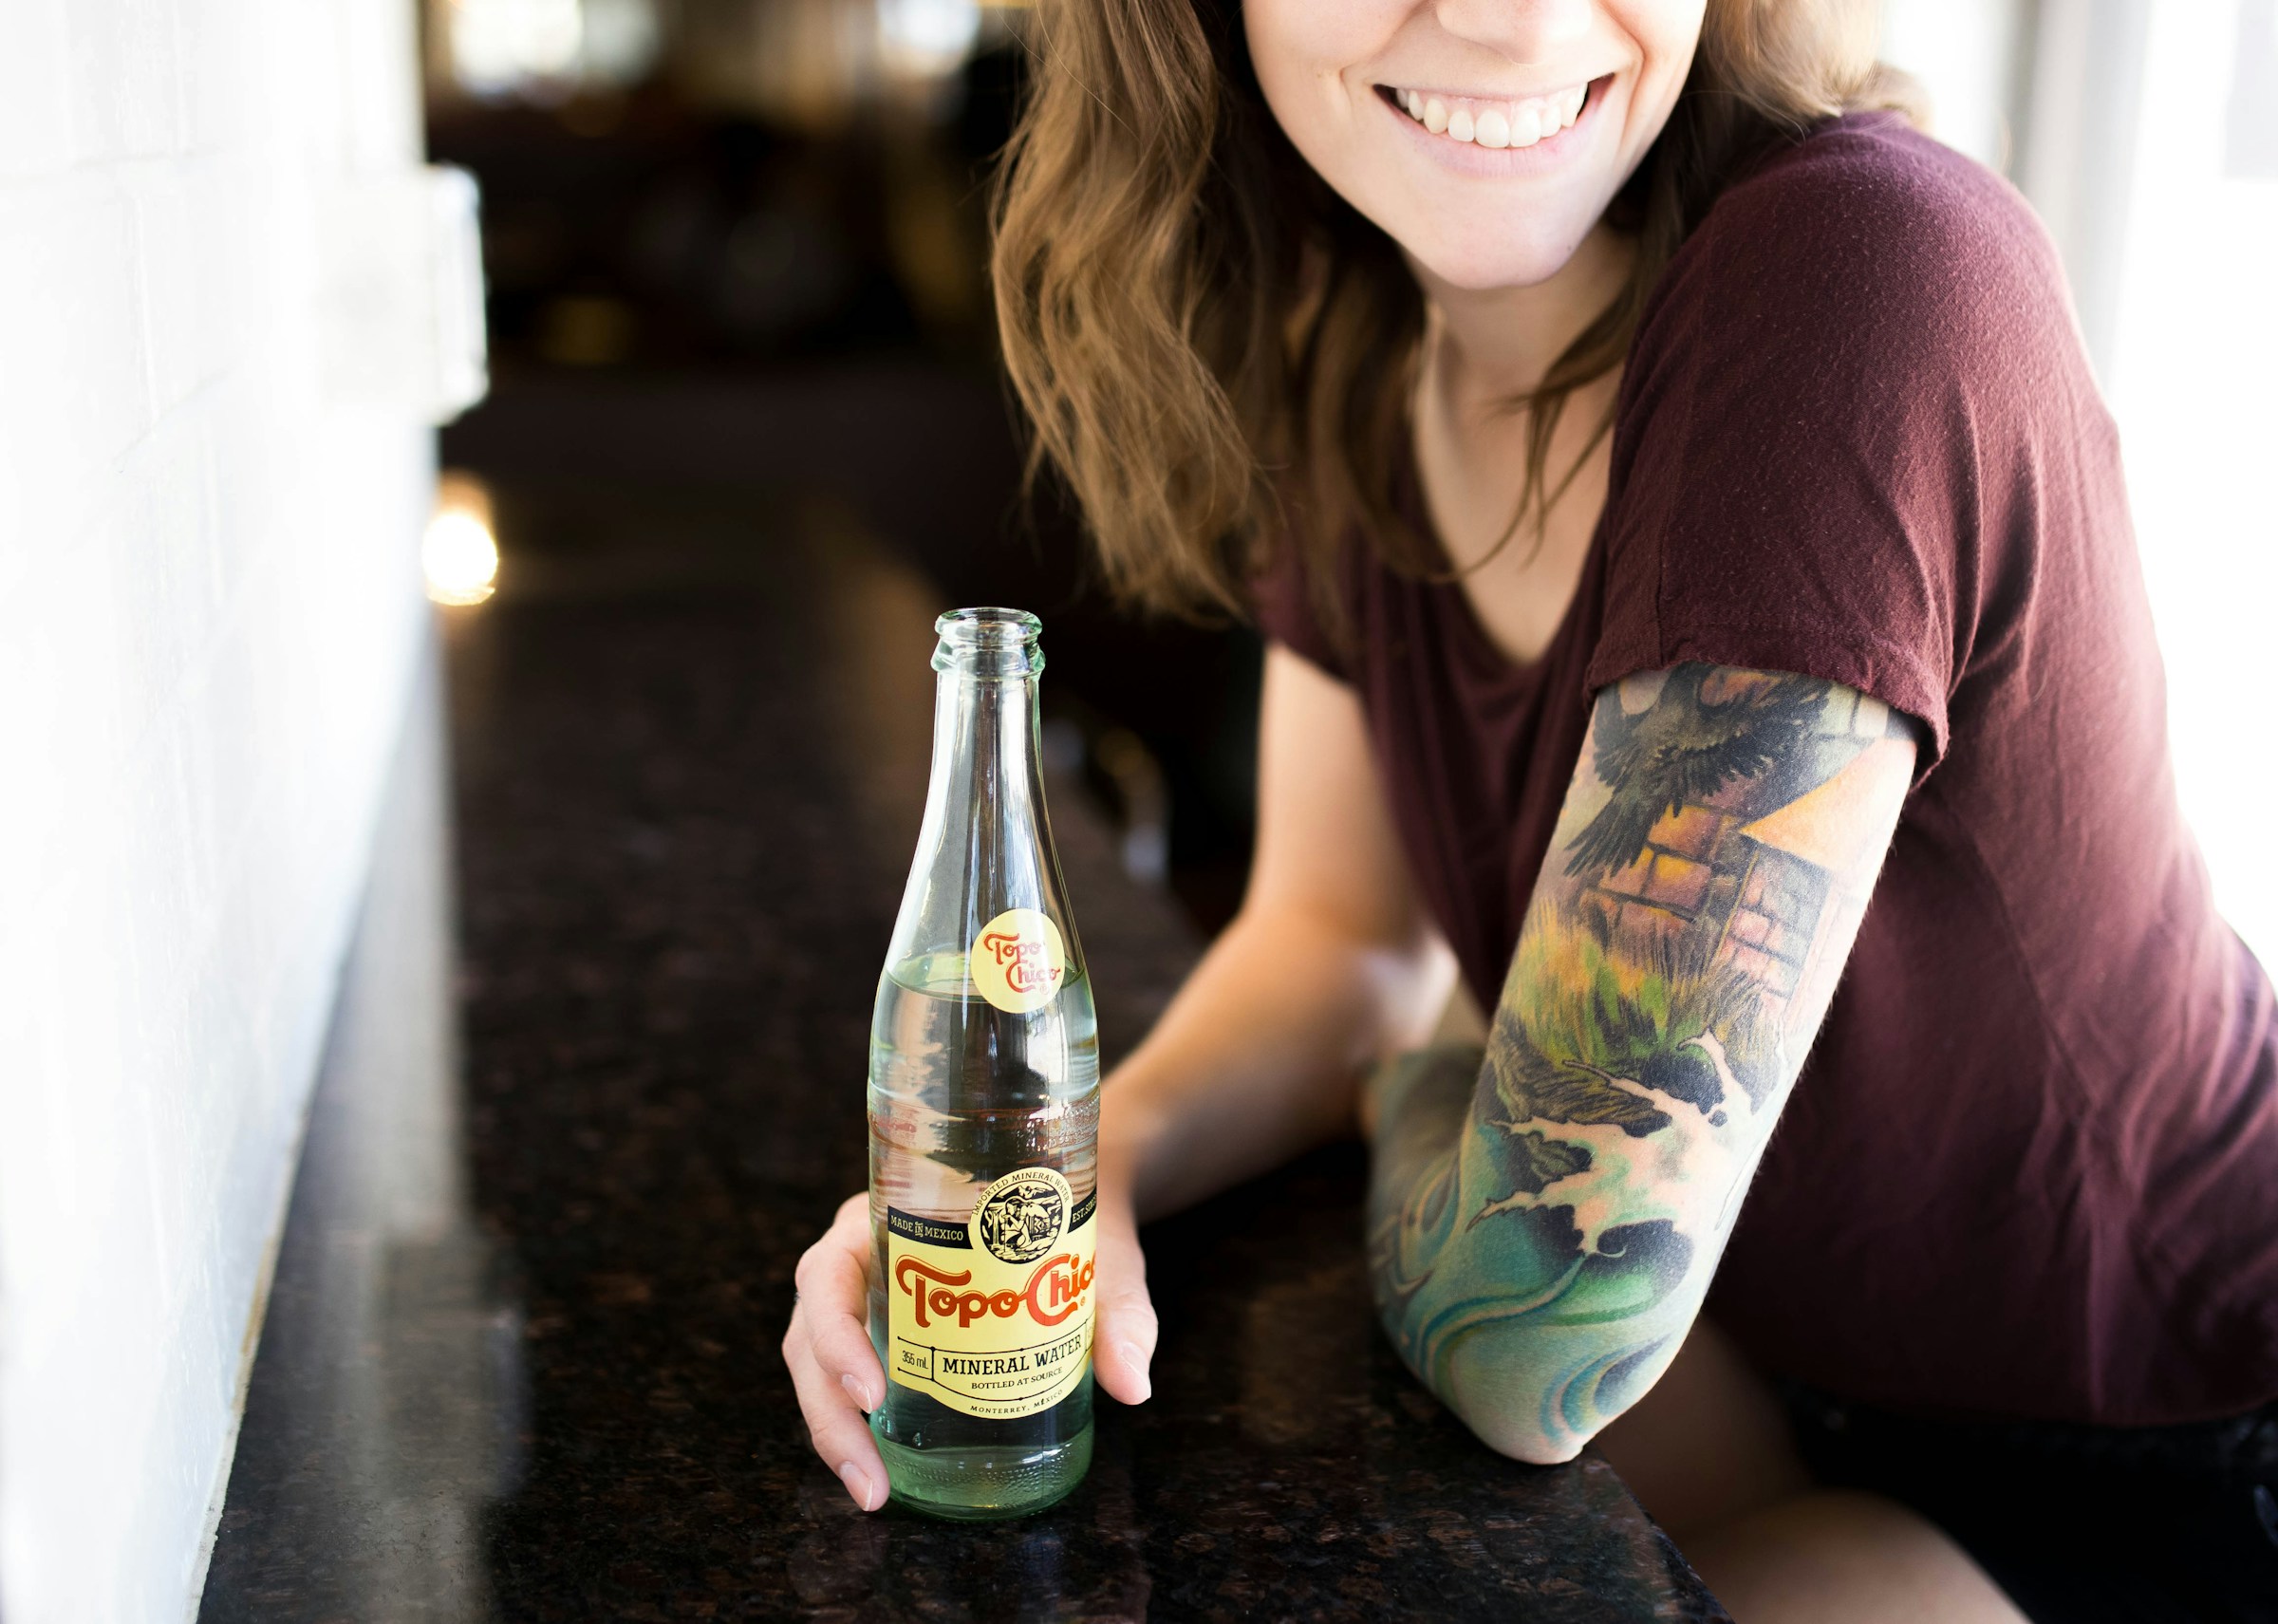 Una mujer con un tatuaje sujetando una botella | Fuente: Unsplash